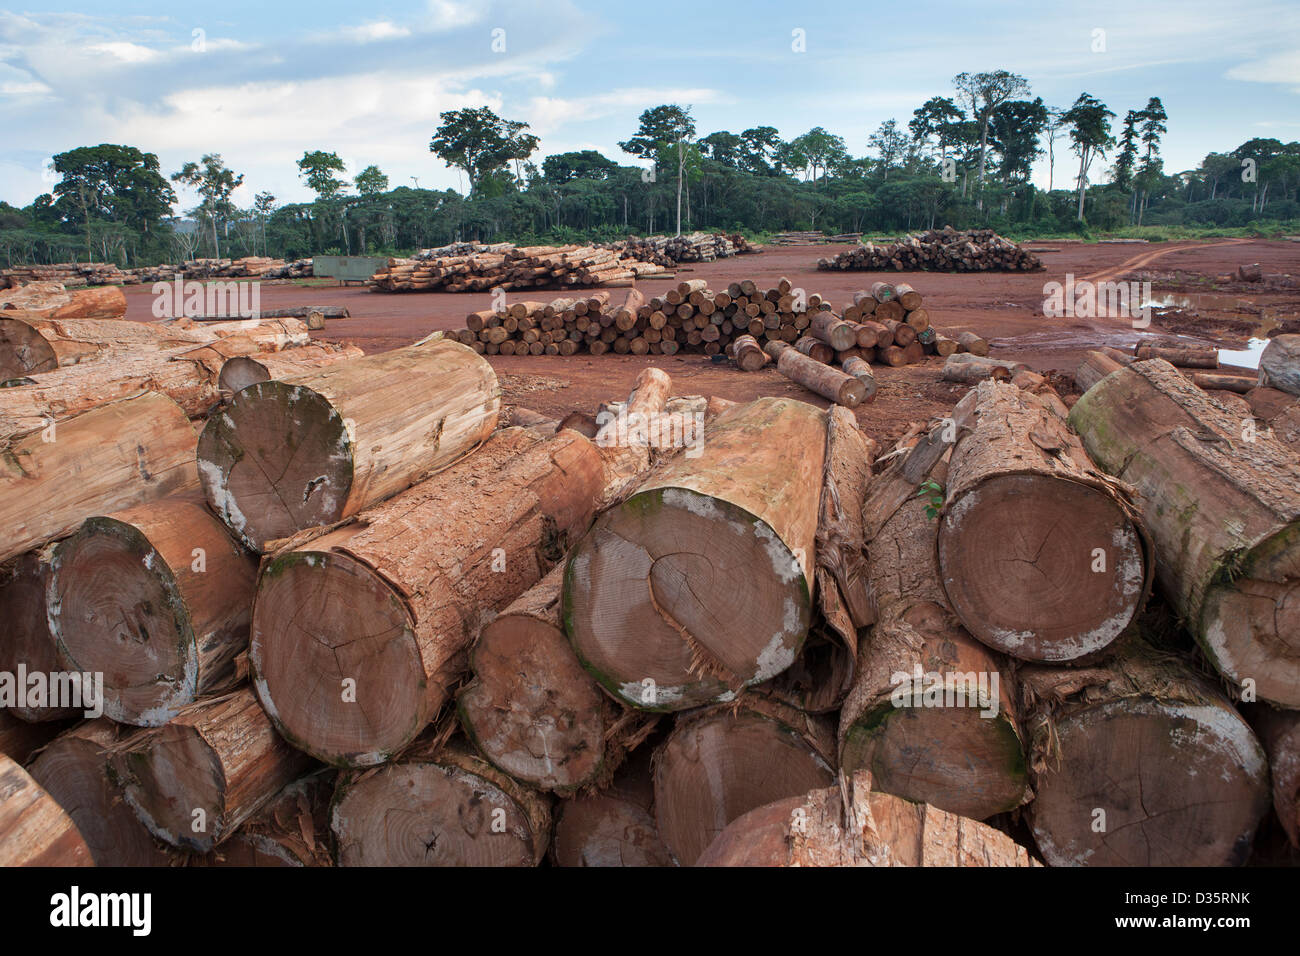 Kongo, 27. September 2012: Baumstämme in einer Protokollierung Konzession Holzlagerplatz erwartet schneiden vor dem Versand aus dem Land für den Export. Stockfoto